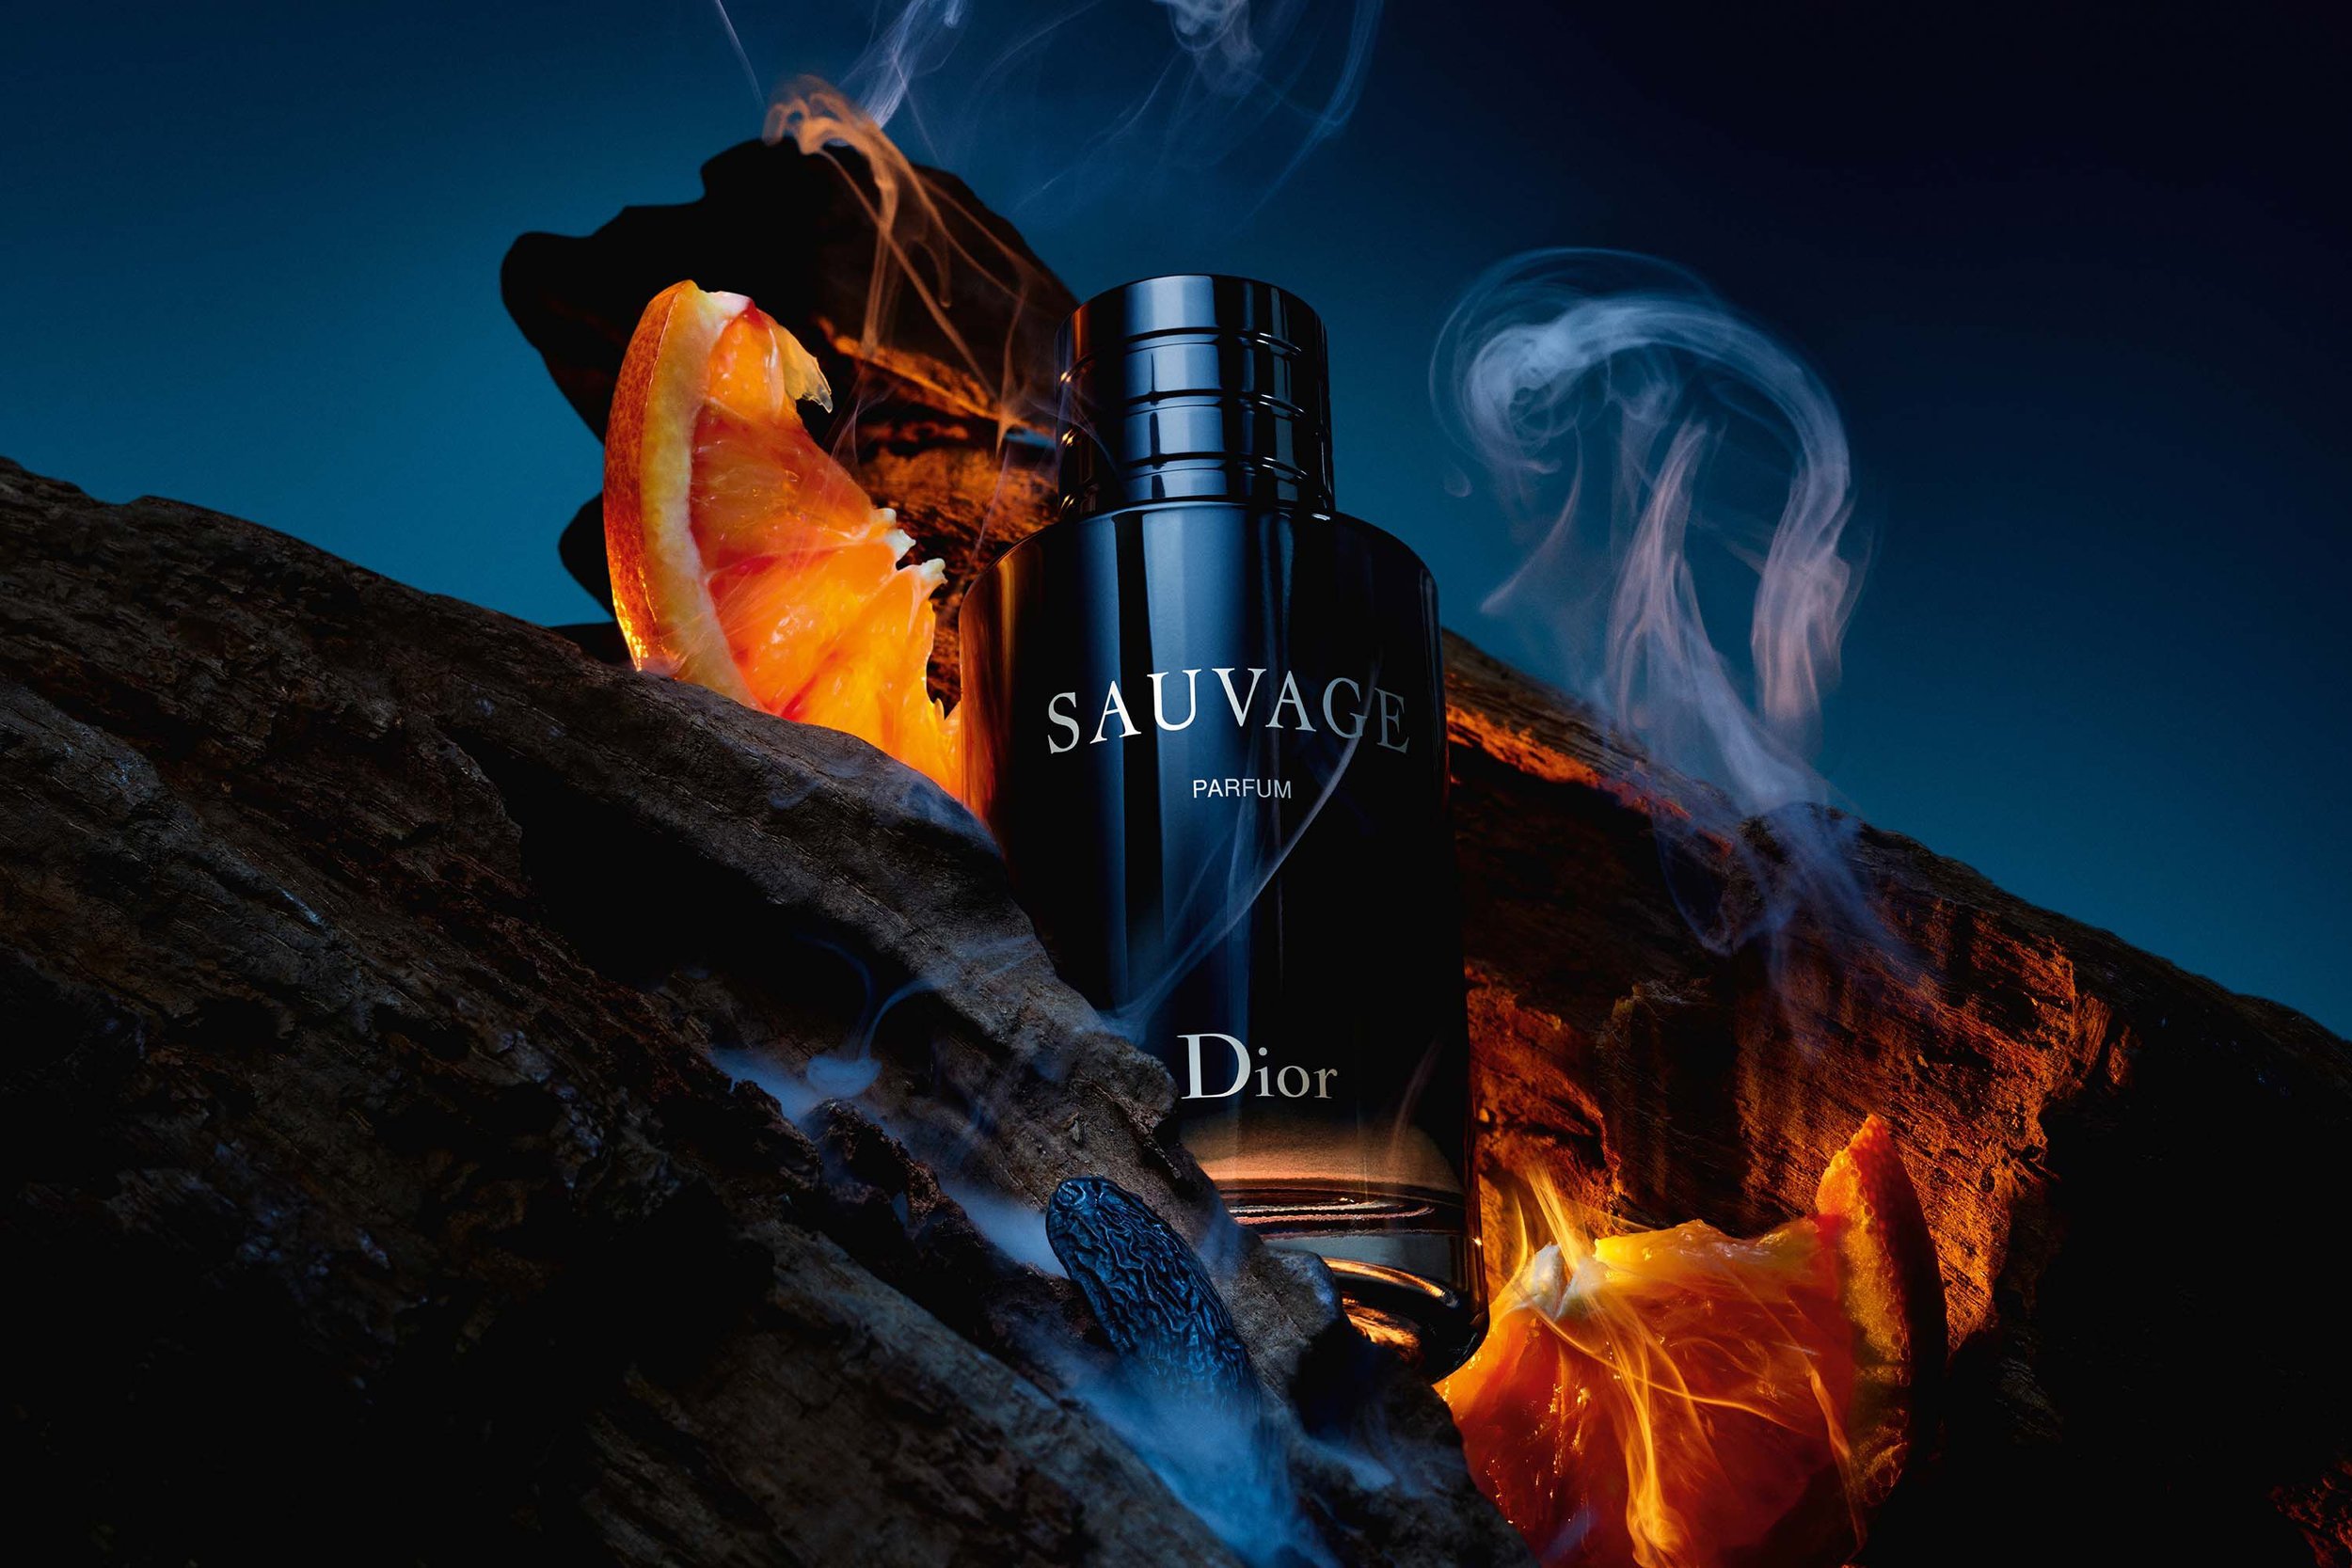 Dior Sauvage Parfum Promo.jpg